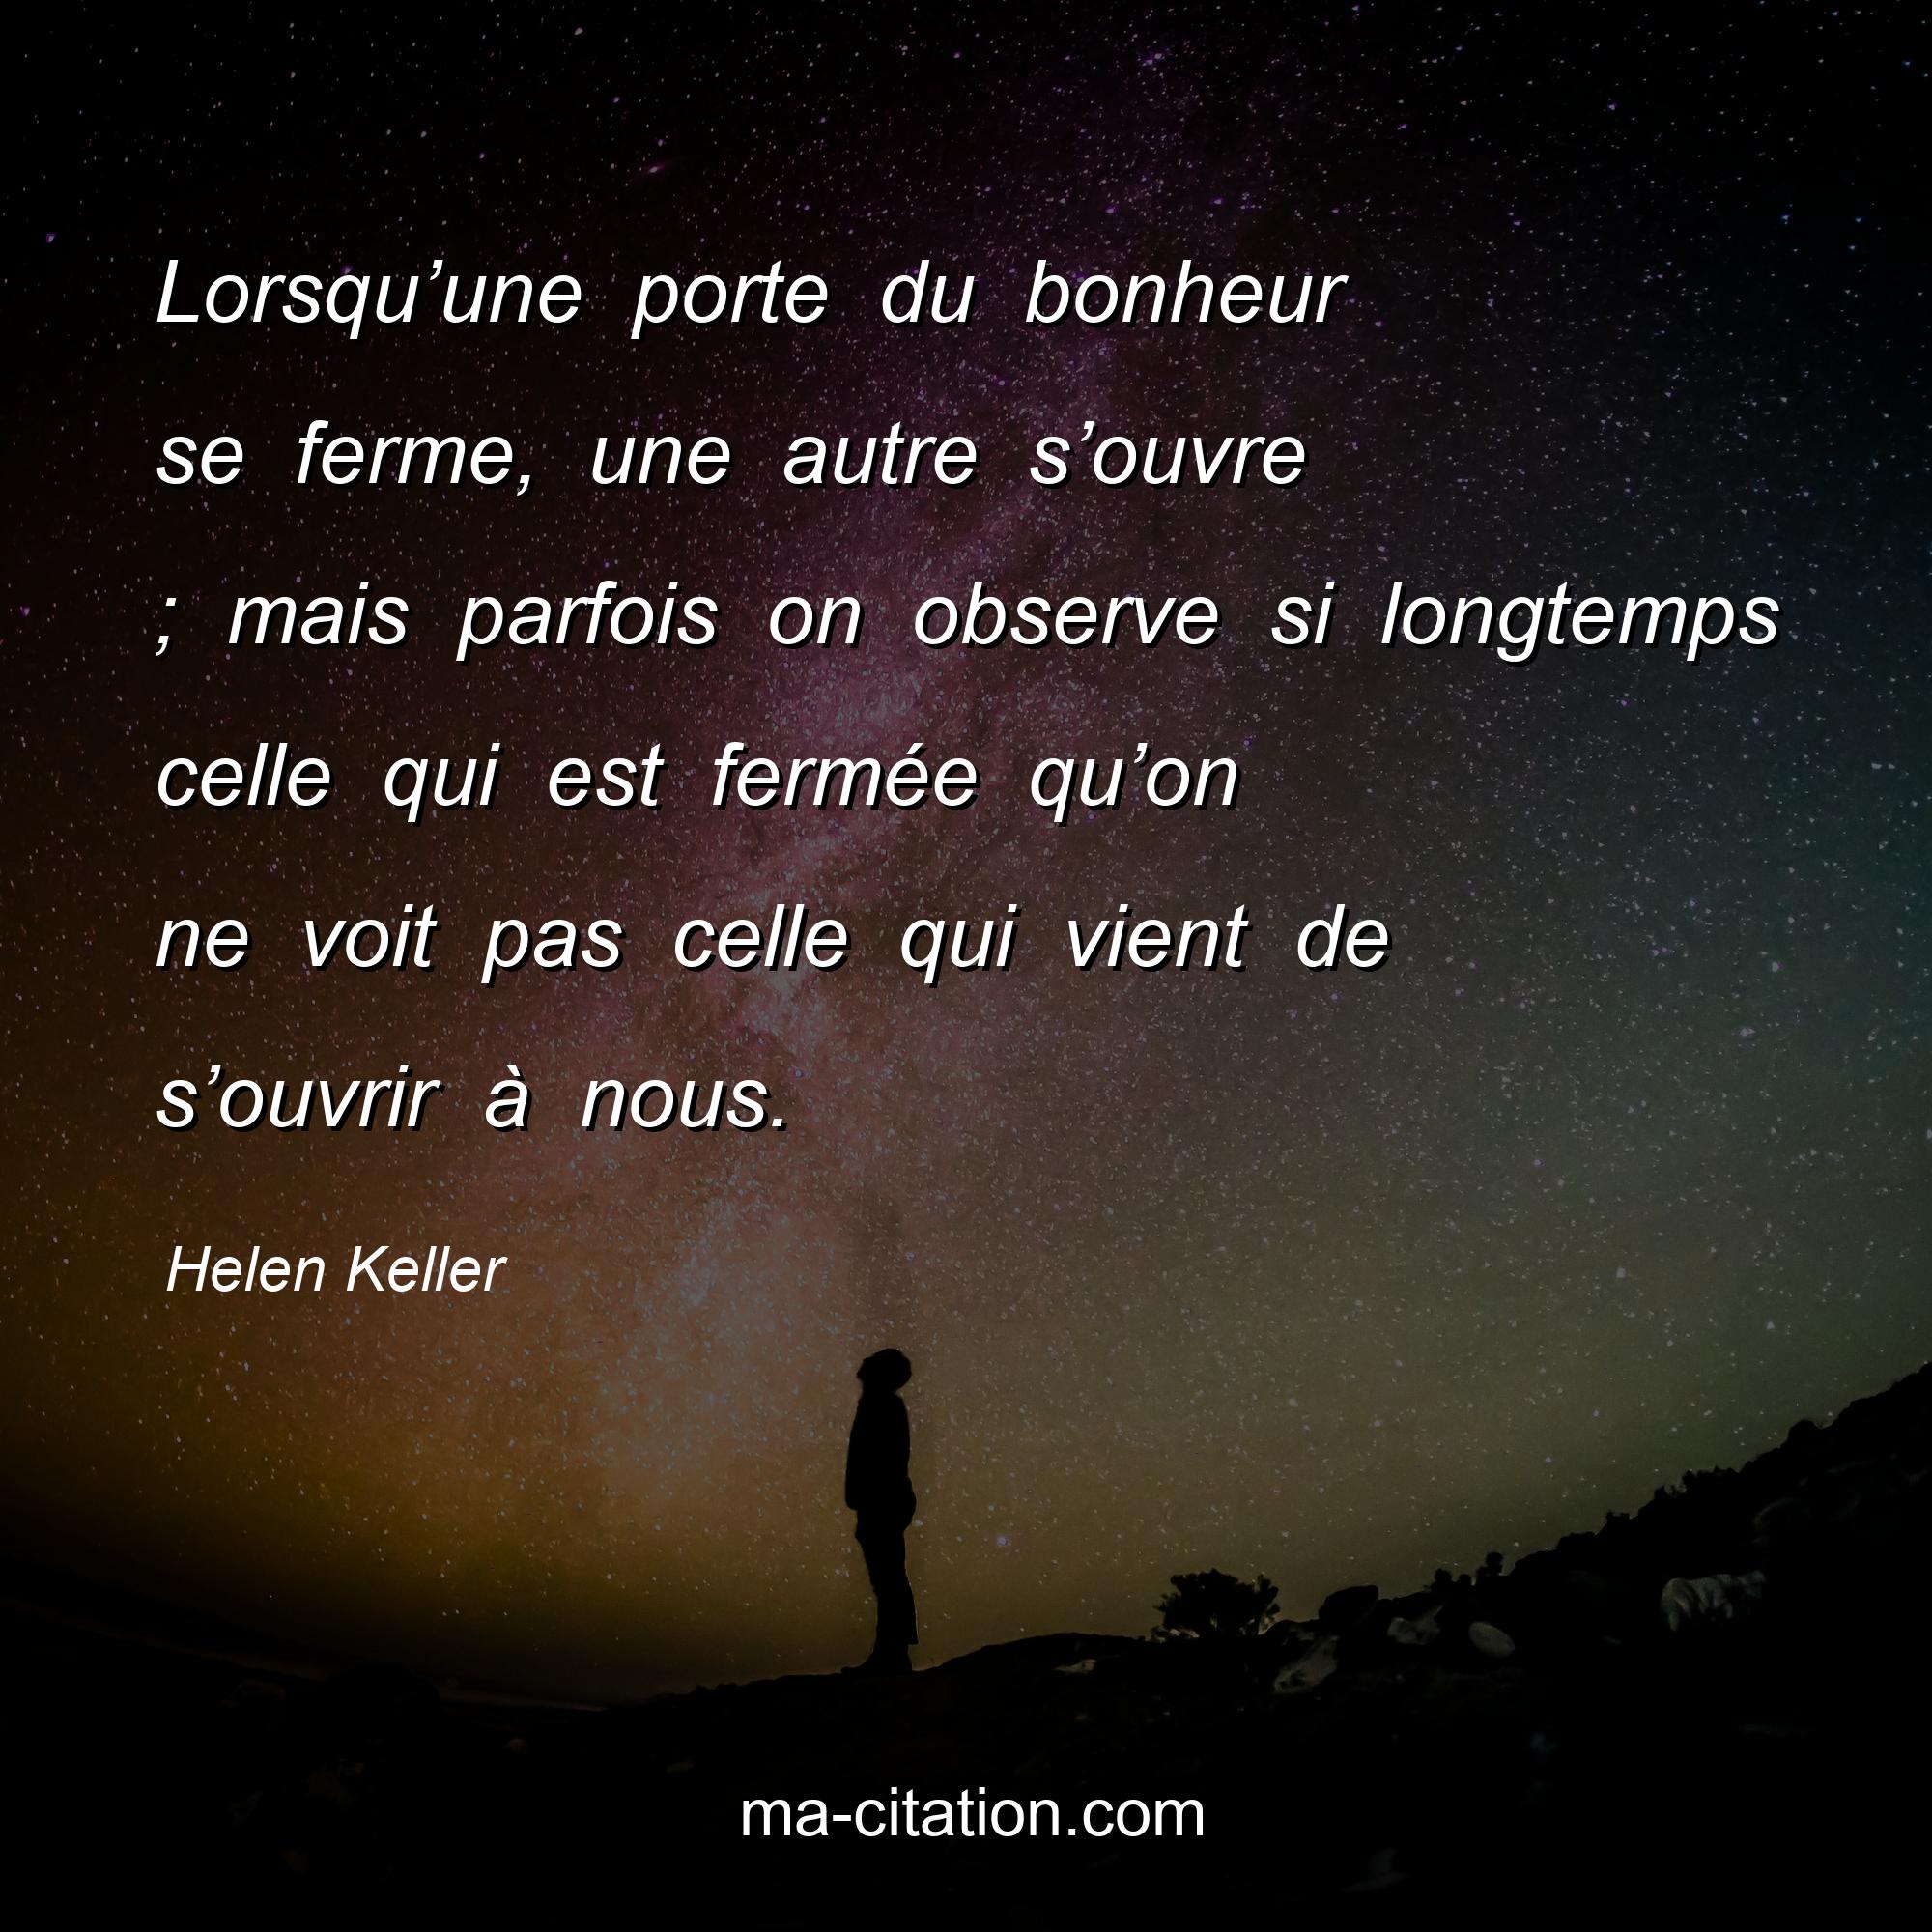 Helen Keller : Lorsqu’une porte du bonheur se ferme, une autre s’ouvre ; mais parfois on observe si longtemps celle qui est fermée qu’on ne voit pas celle qui vient de s’ouvrir à nous.